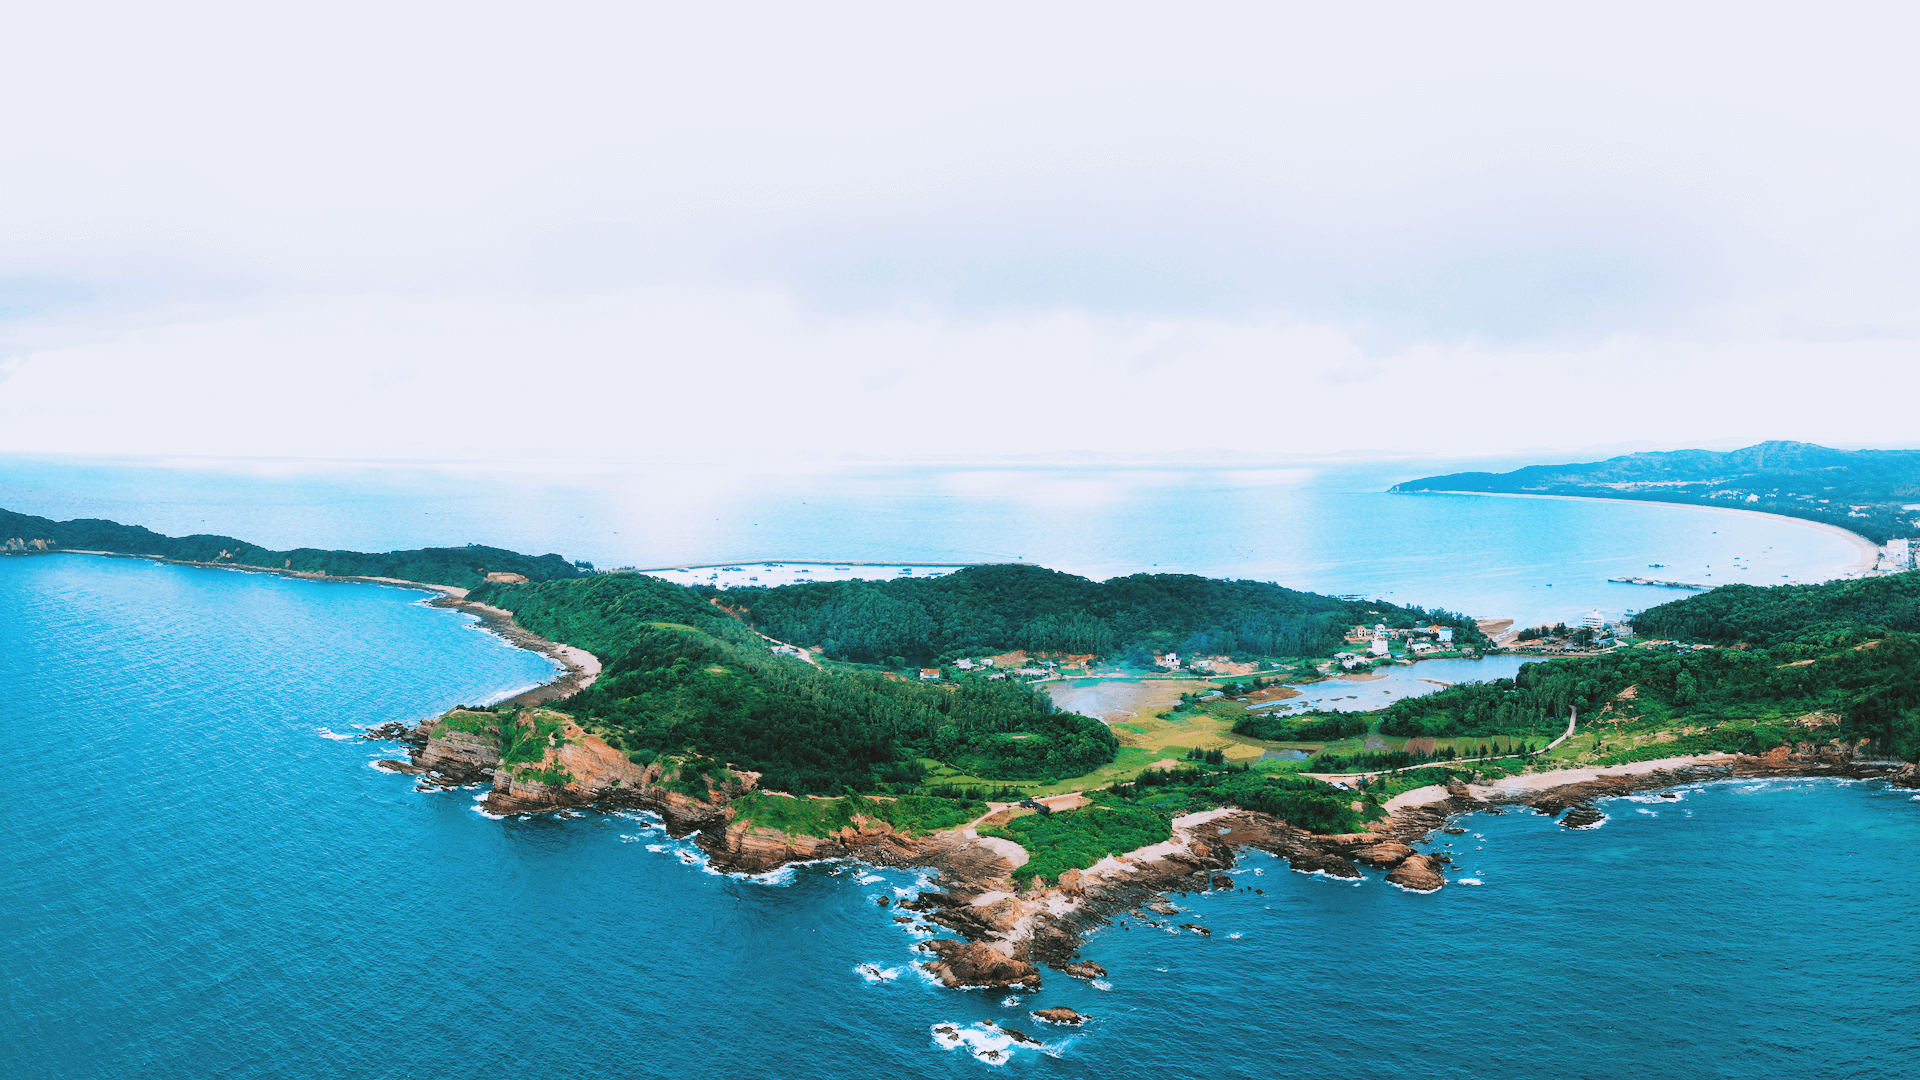 Tổng hợp những hình ảnh đẹp về đảo Lý Sơn  Điểm du lịch không thể bỏ qua  trong năm 2020